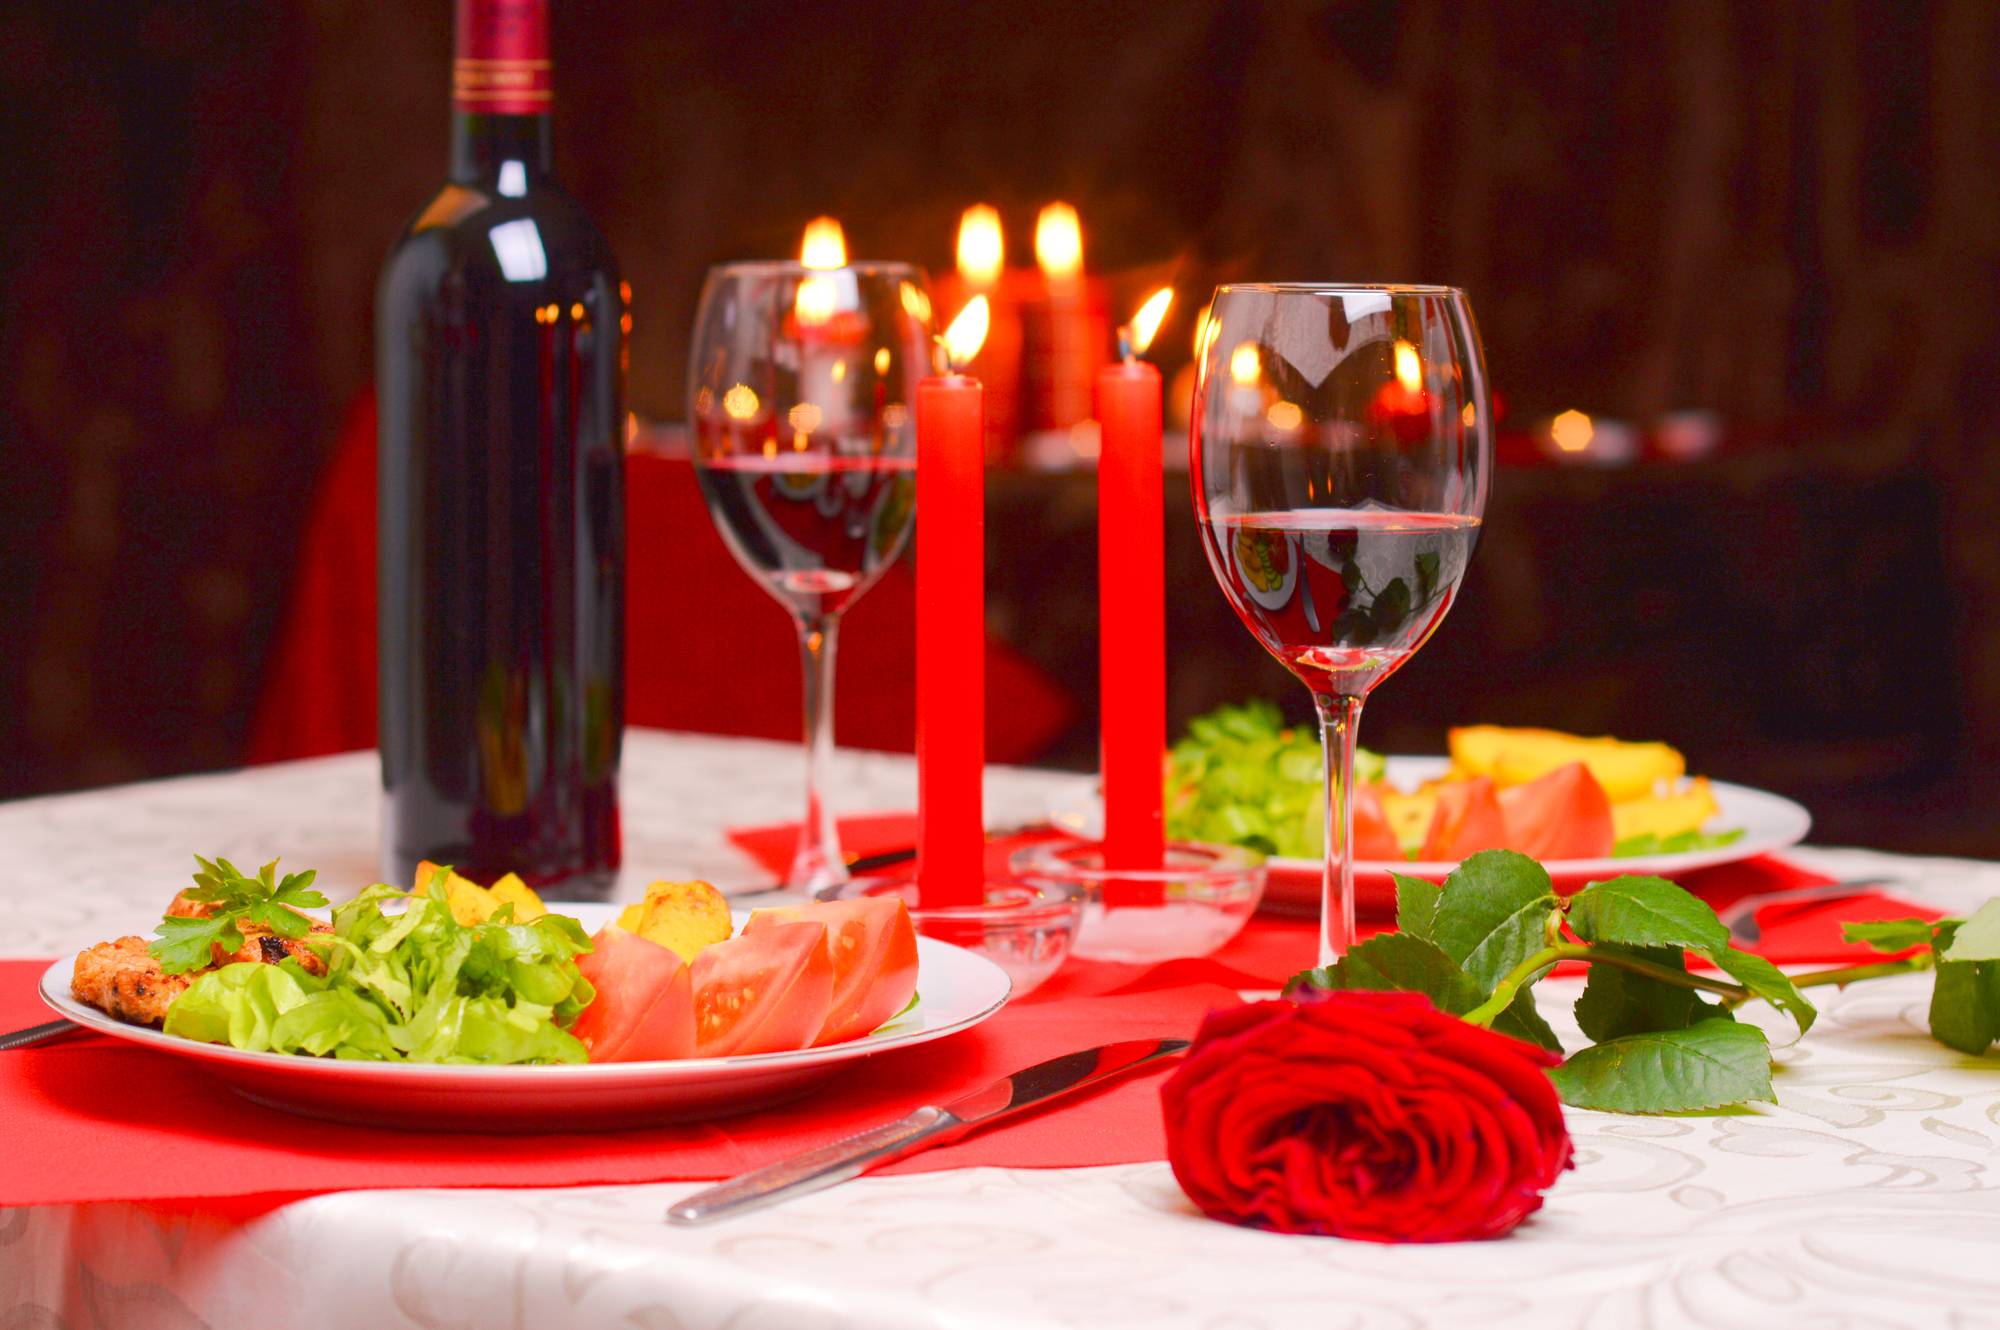 Романтический ужин для любимого в домашних условиях | lifeforjoy